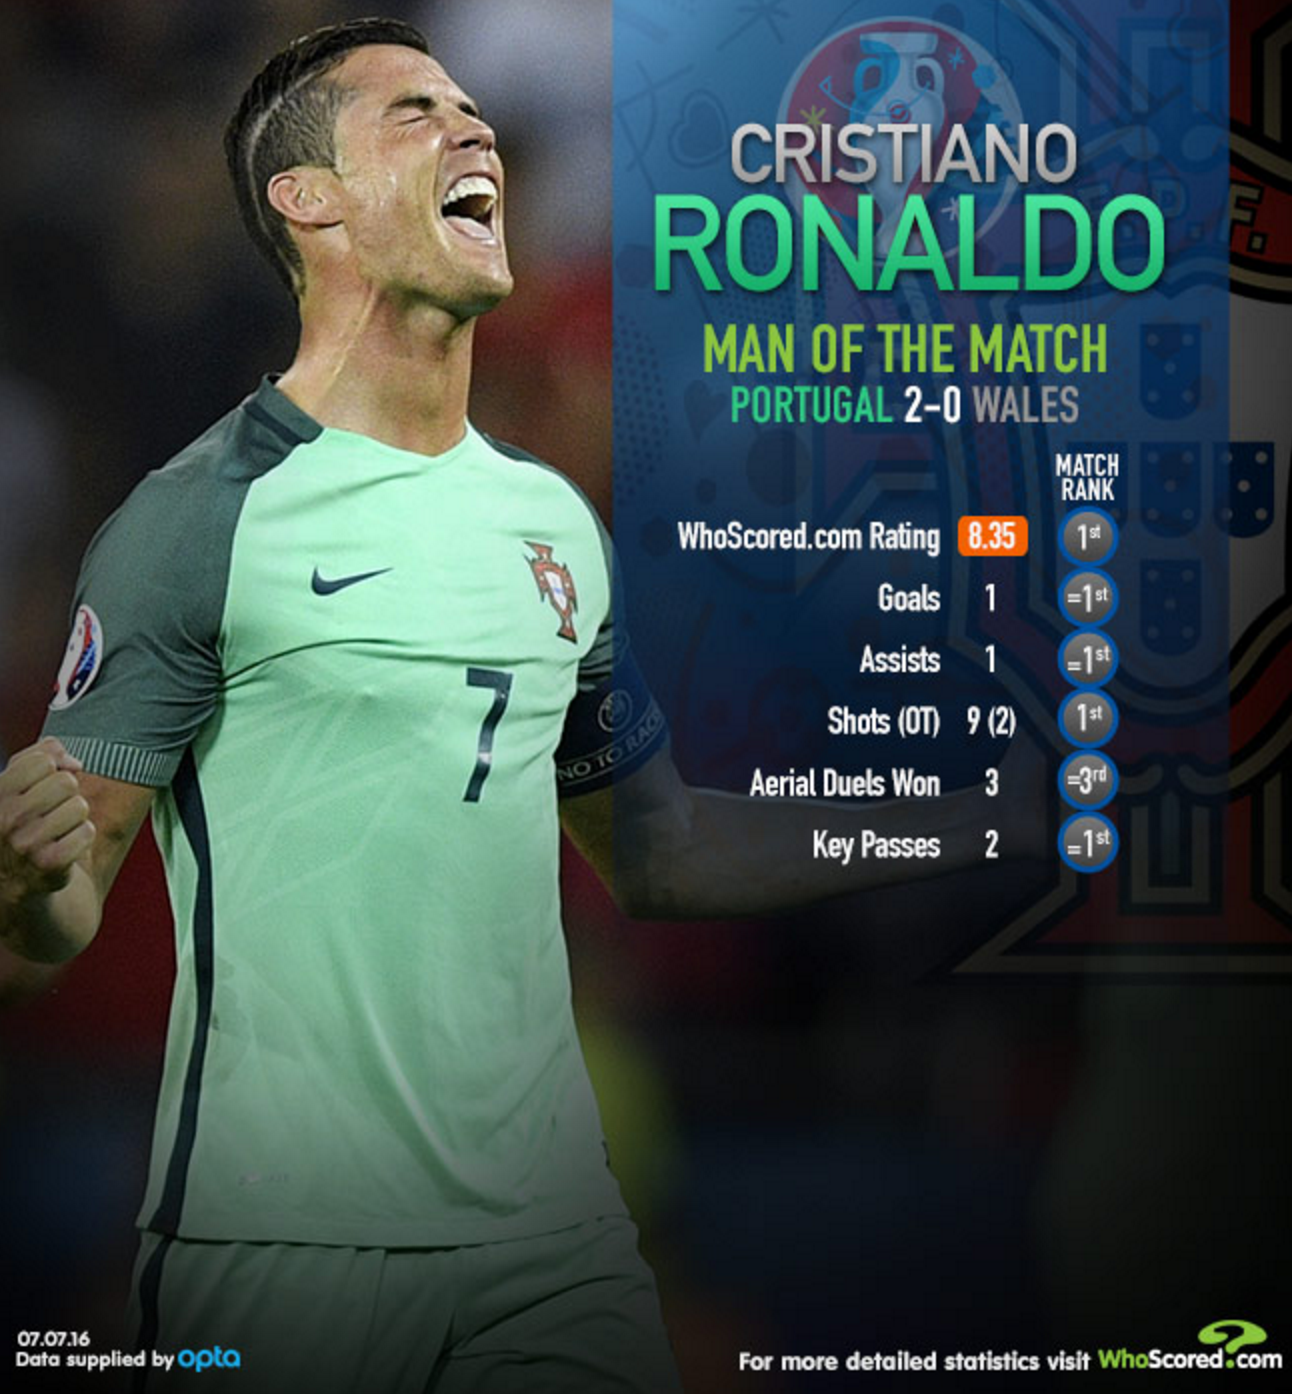 Τα στατιστικά του Κριστιάνο Ρονάλντο στον ημιτελικό με την Ουαλία που τον έχρισαν man of the match (Πηγή: Whoscored.com)